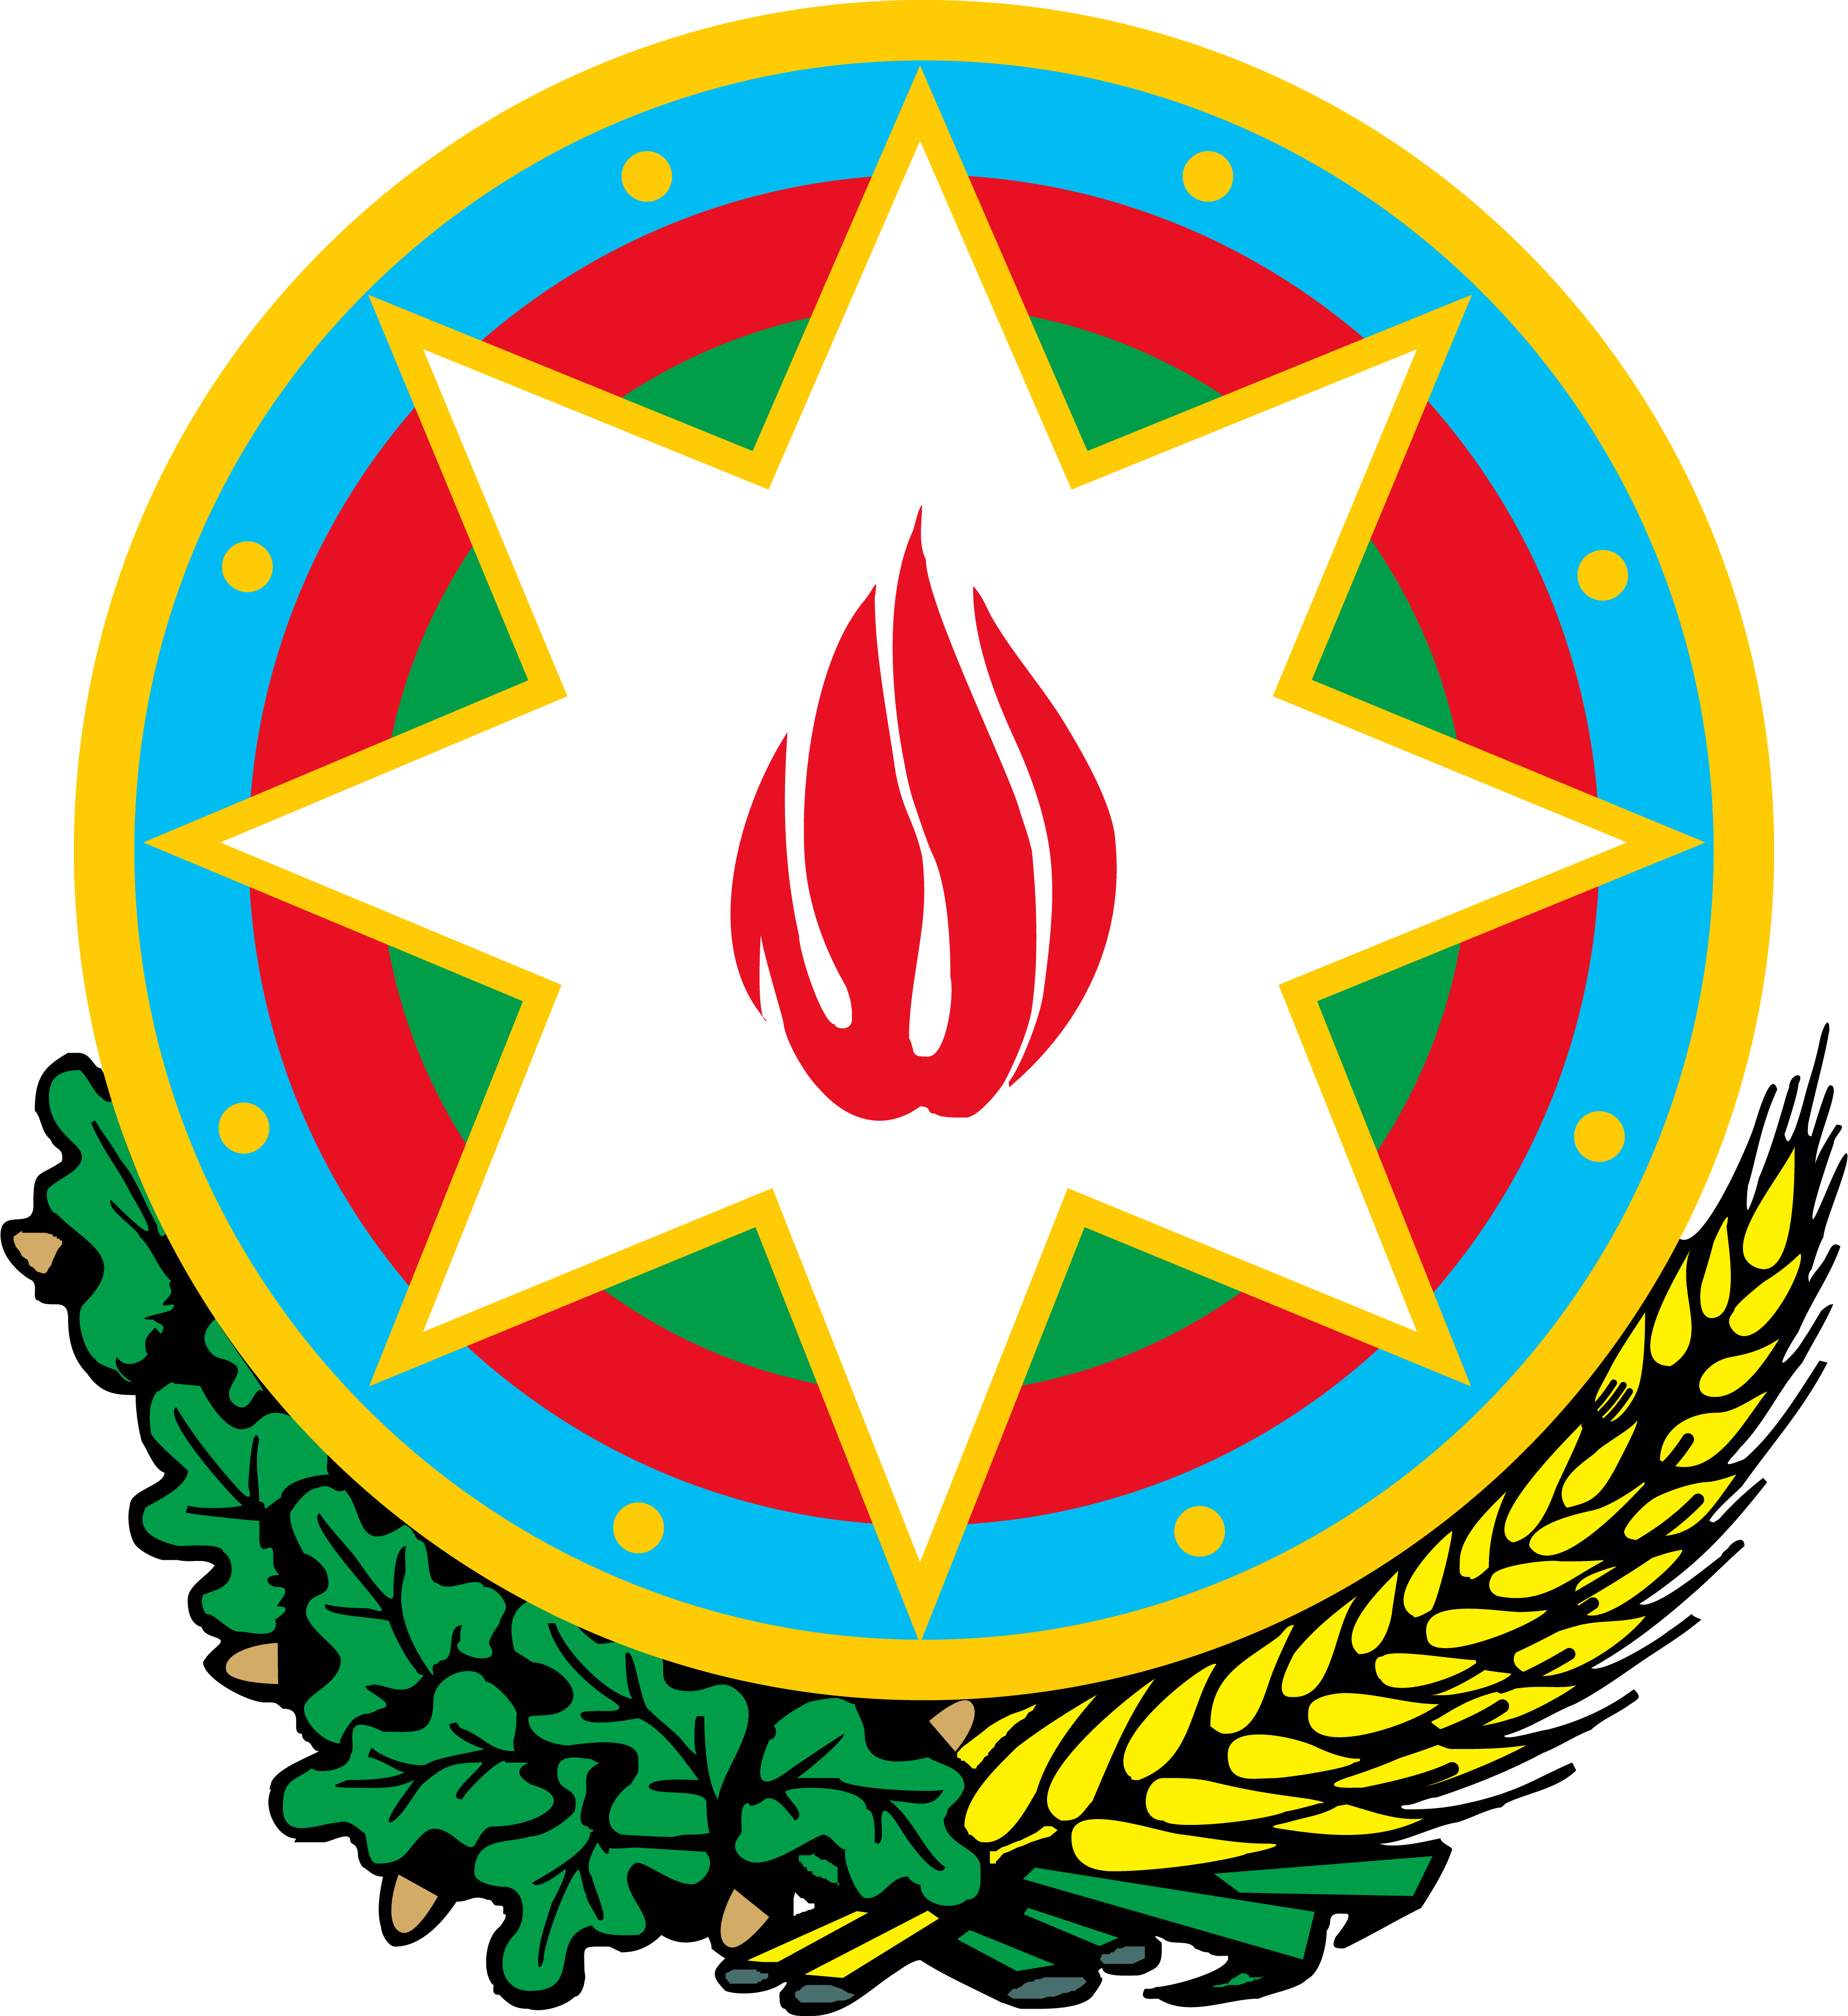 亞塞拜然國徽